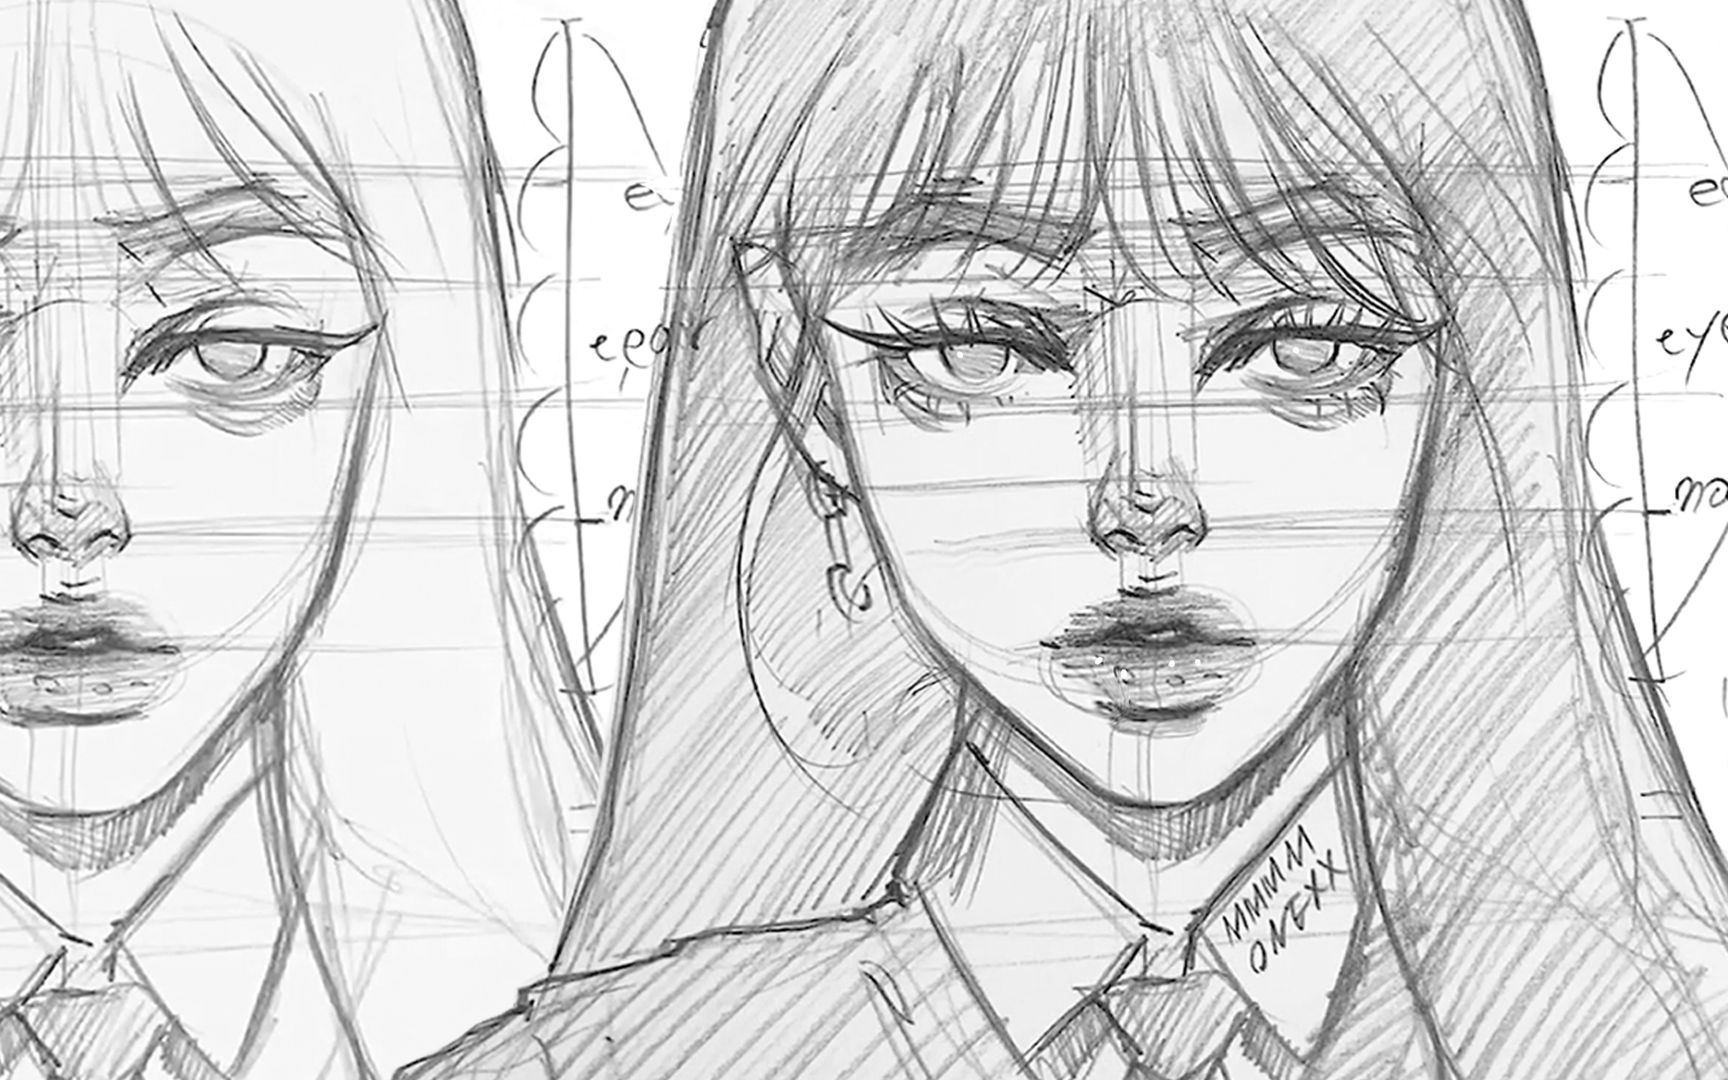 Hướng dẫn vẽ đầu và khuôn mặt nhân vật Anime nữ  Trung tâm Ngoại ngữ ILC   Blog Giáo dục